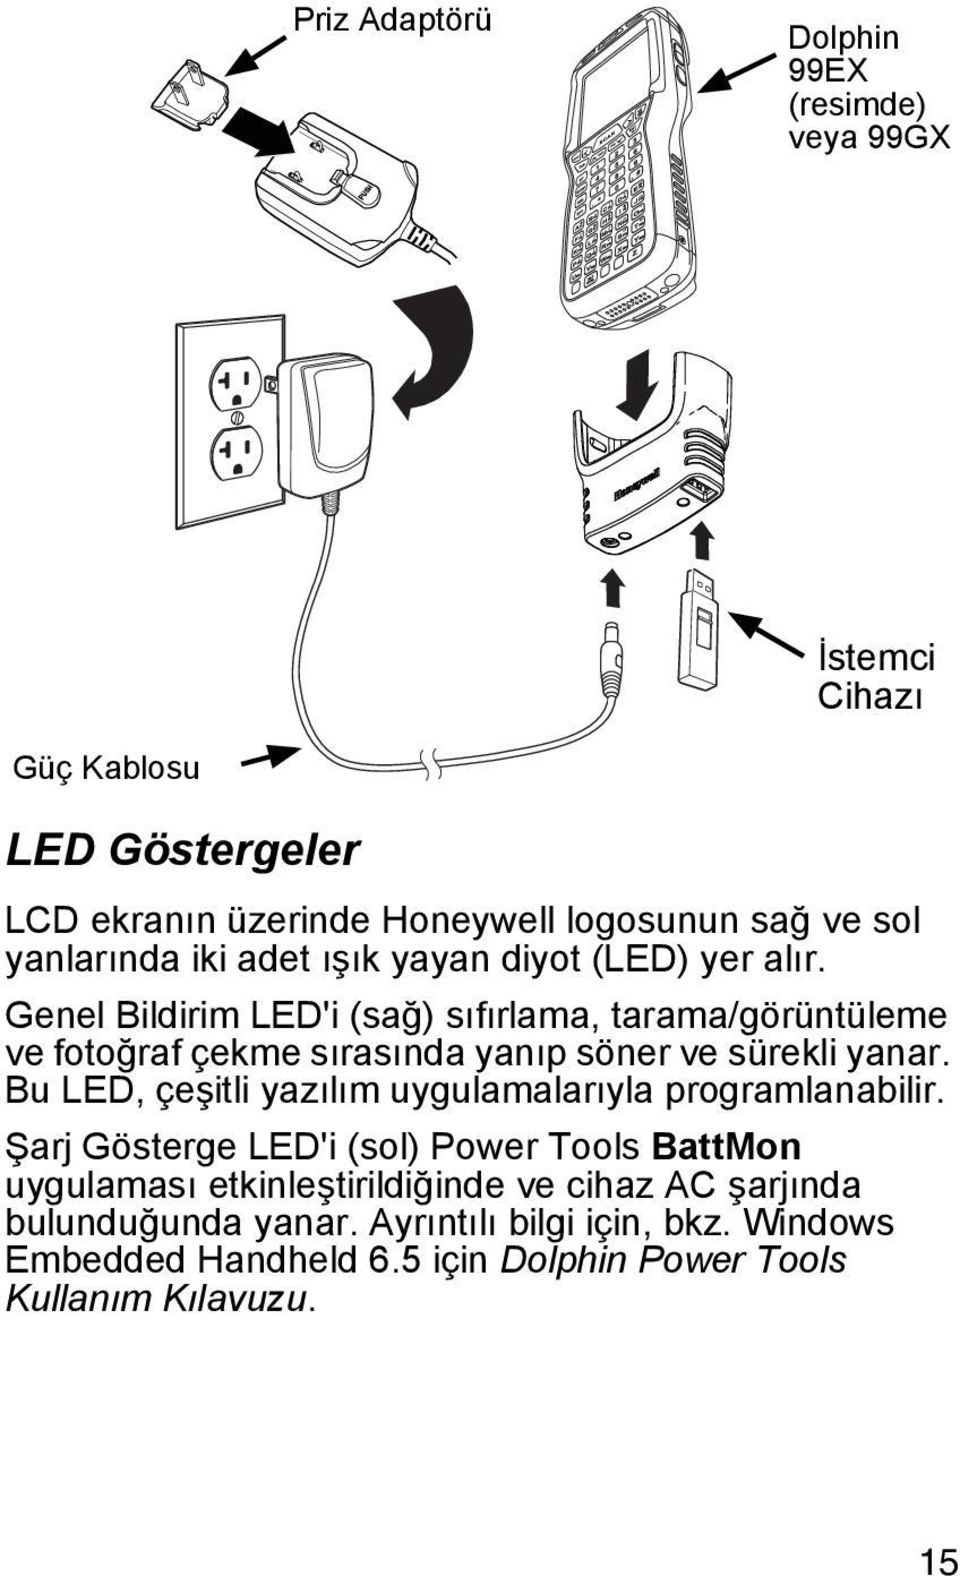 Genel Bildirim LED'i (sağ) sıfırlama, tarama/görüntüleme ve fotoğraf çekme sırasında yanıp söner ve sürekli yanar.